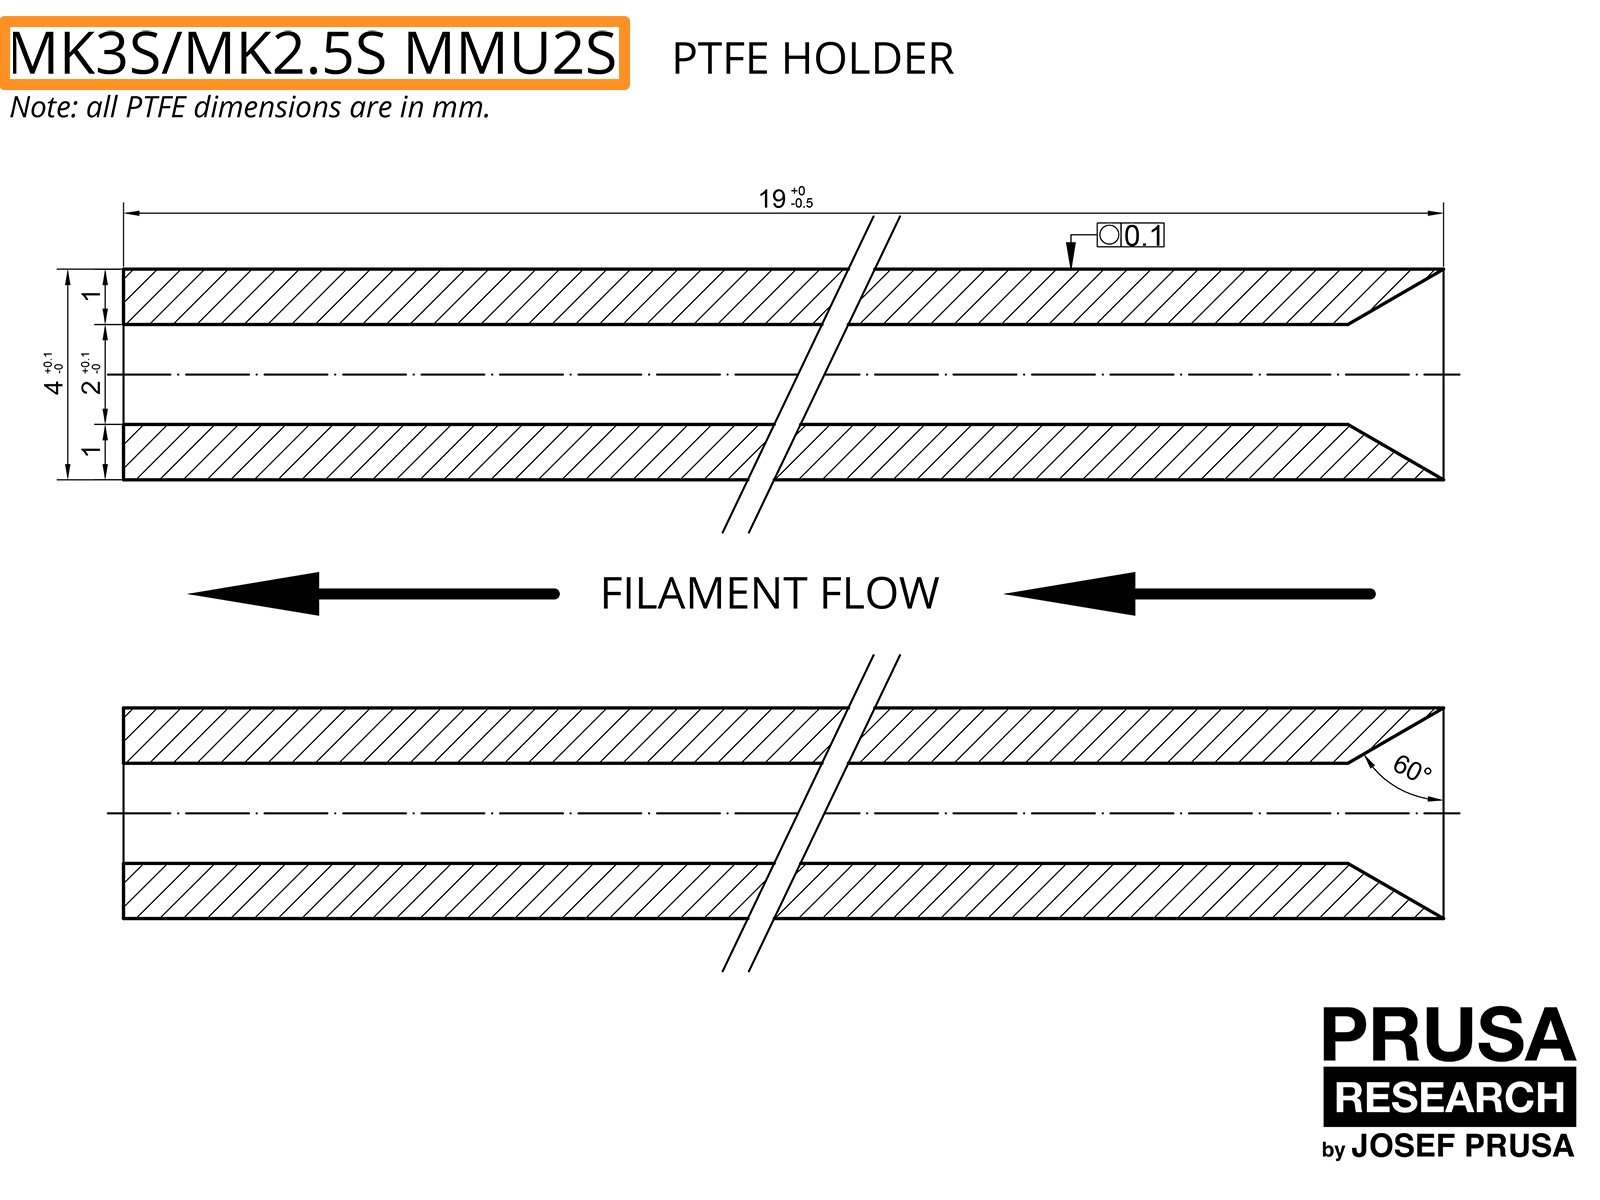 OBSOLETO: PTFE per MK3S/MK2.5S MMU2S (parte 1)